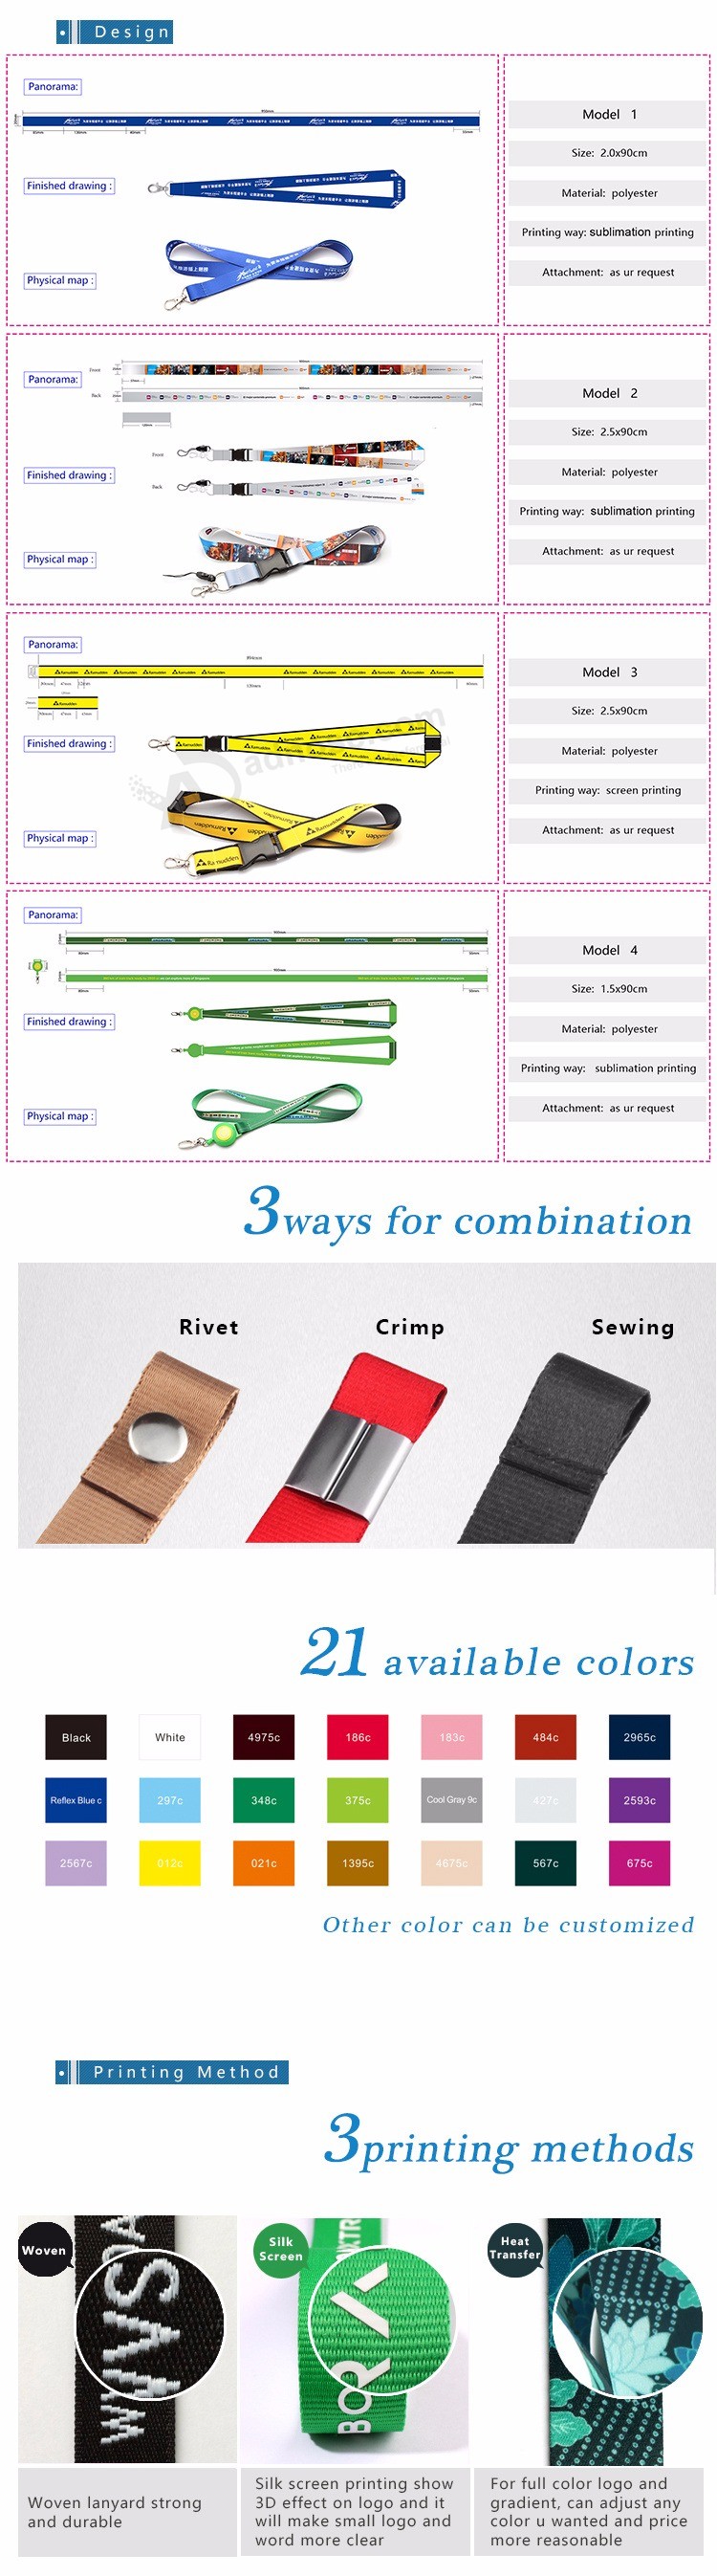 Cordón impreso barato personalizado Diseño de poliéster Su propio cordón Sin mínimo para teléfono móvil